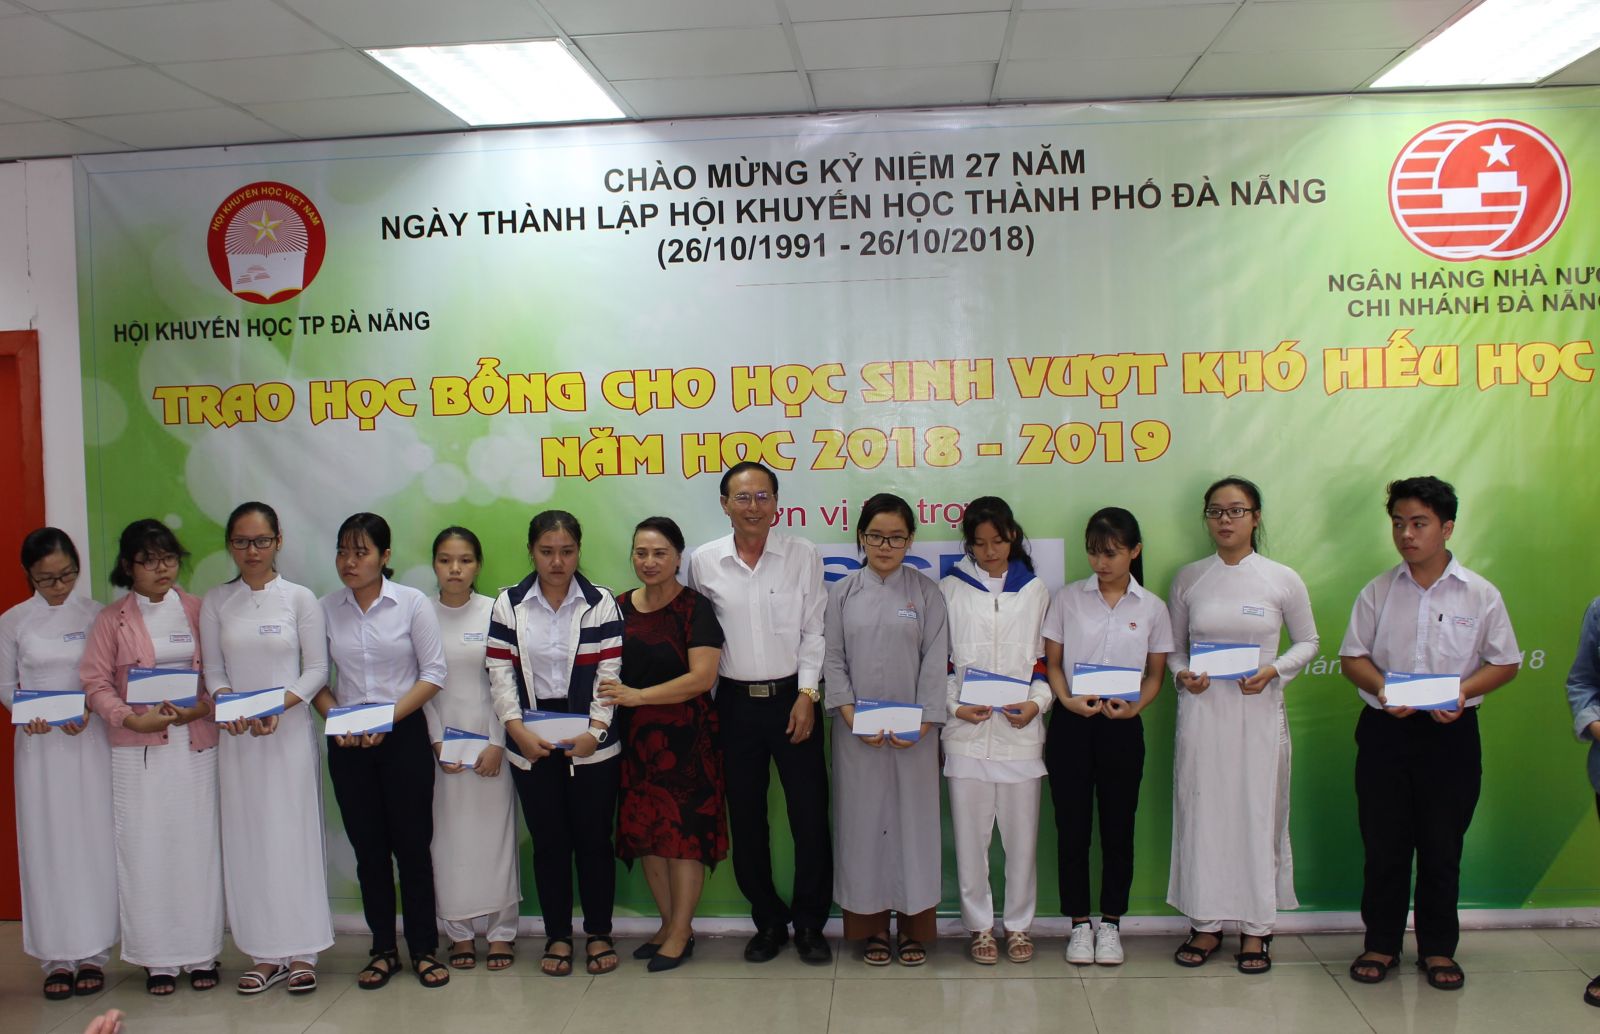 Bà Vũ Kim Dung – Giám đốc KV Miền Trung & Tây Nguyên trao học bổng cho các em học sinh vượt khó học giỏi.